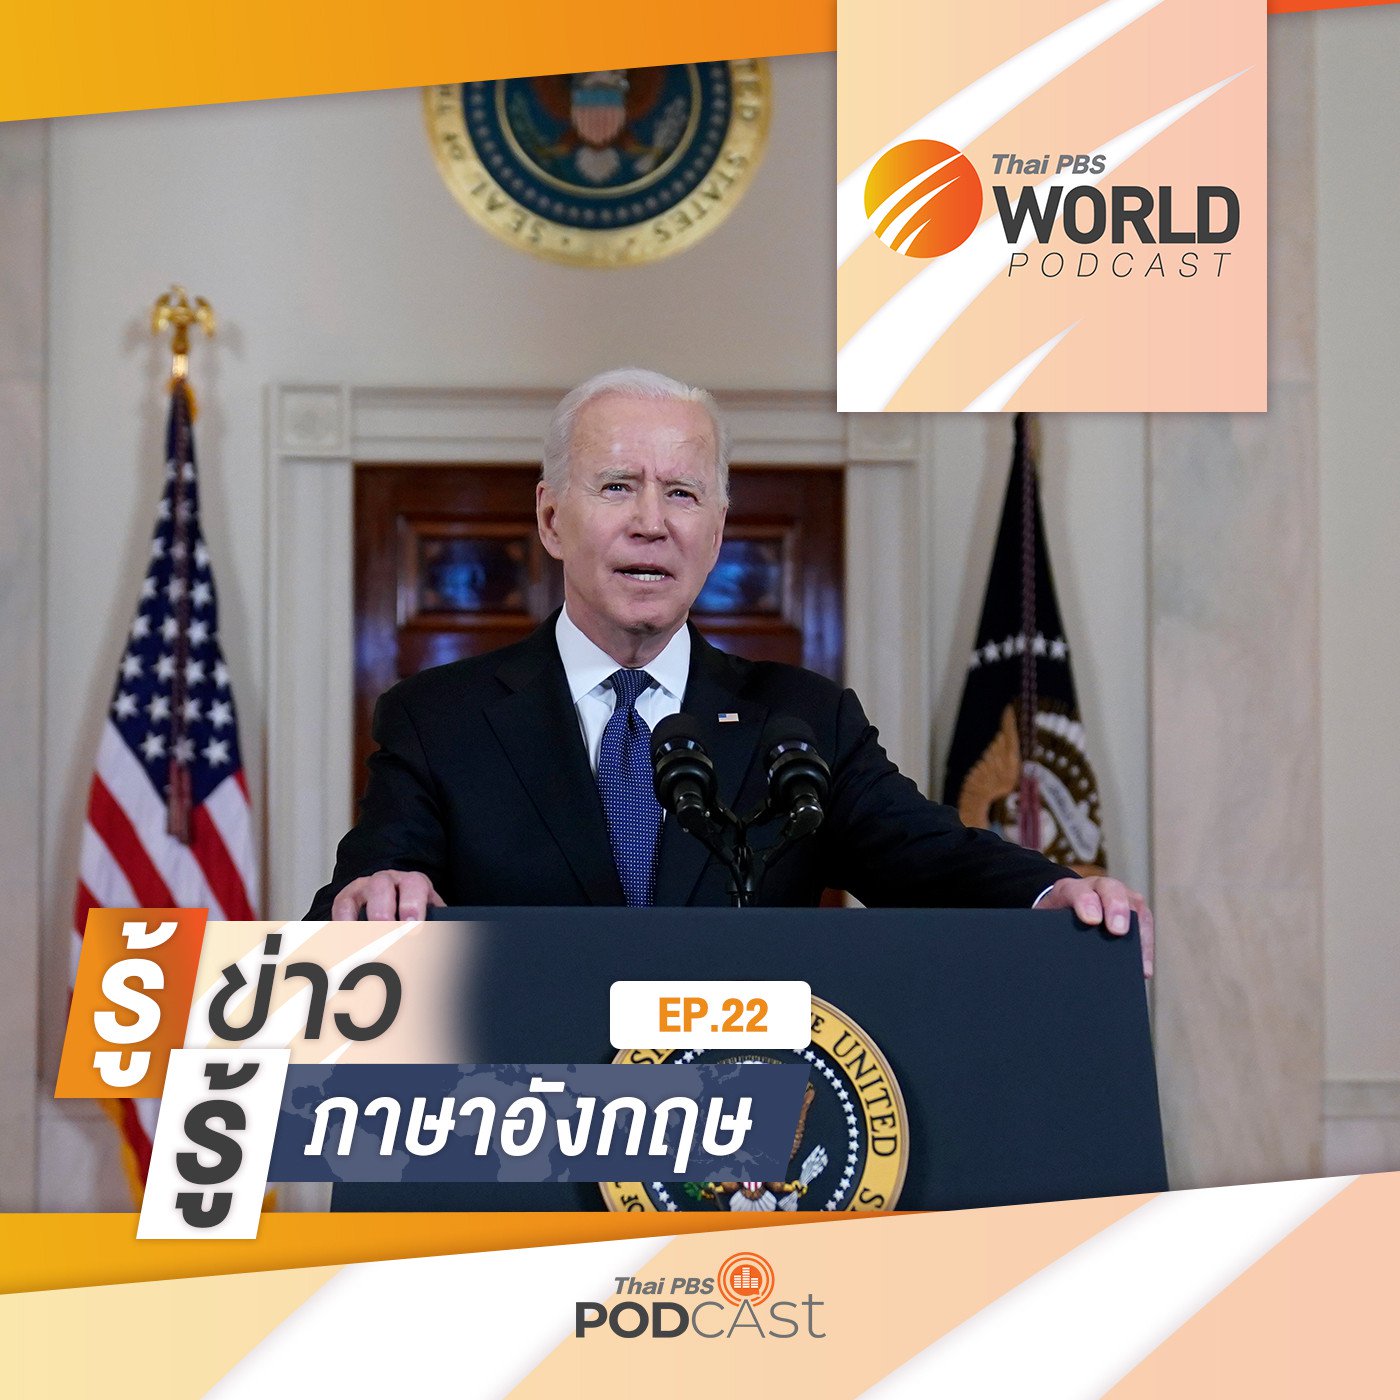 Thai PBS World Podcast - รู้ข่าว รู้ภาษาอังกฤษ EP. 22: รู้ข่าว รู้ภาษาอังกฤษ - 